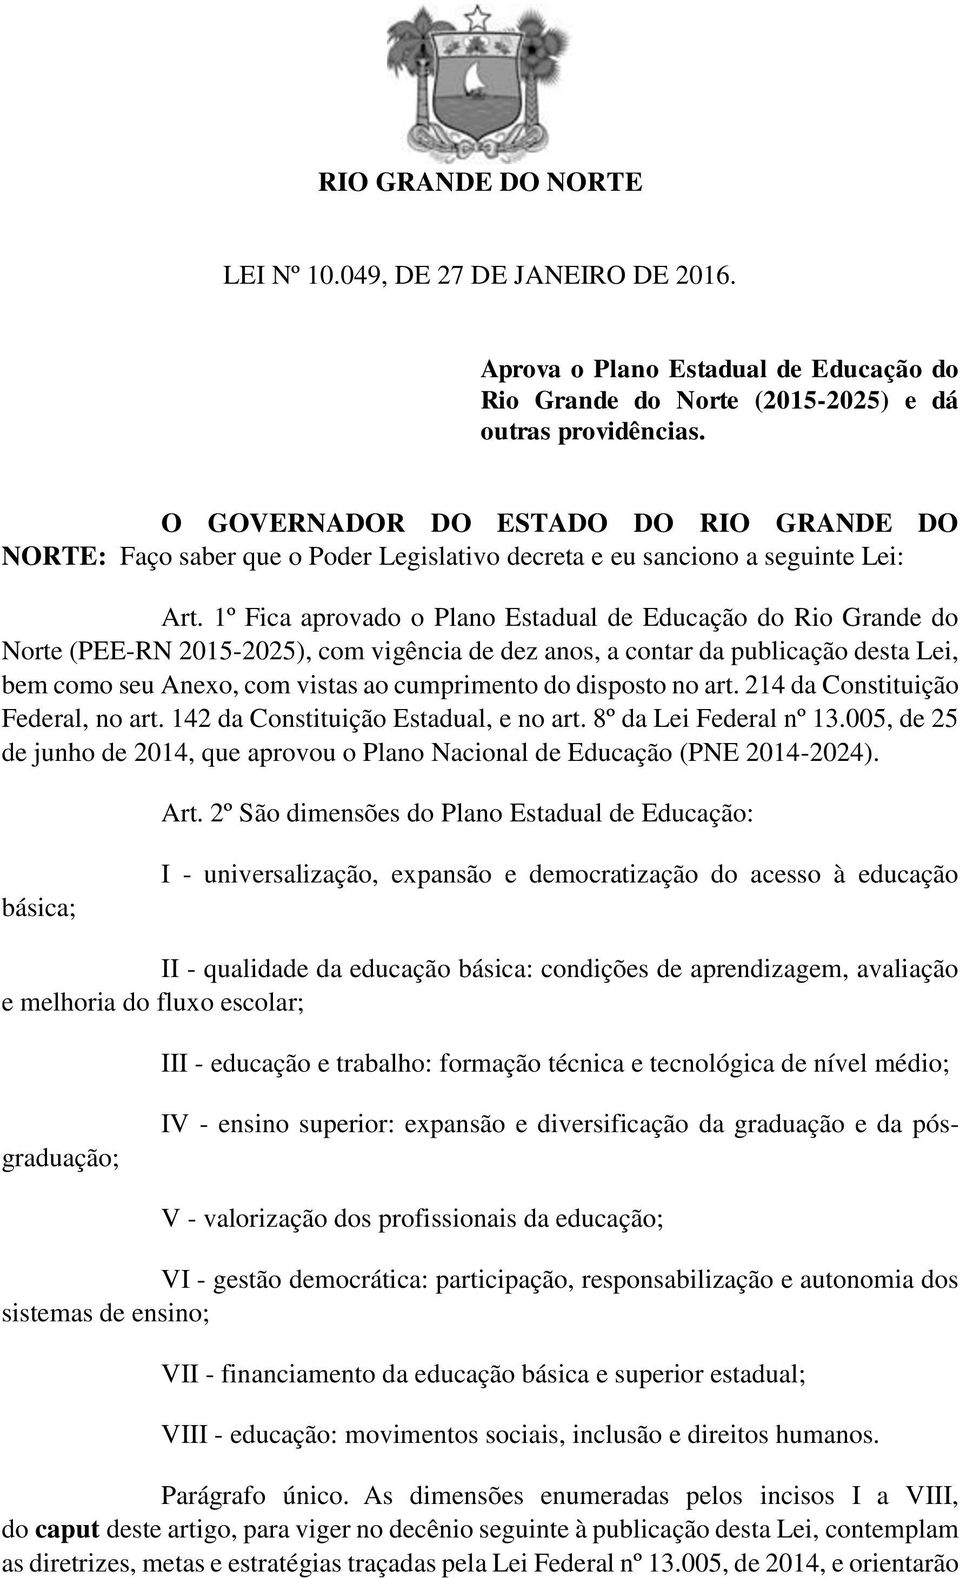 1º Fica aprovado o Plano Estadual de Educação do Rio Grande do Norte (PEE-RN 2015-2025), com vigência de dez anos, a contar da publicação desta Lei, bem como seu Anexo, com vistas ao cumprimento do